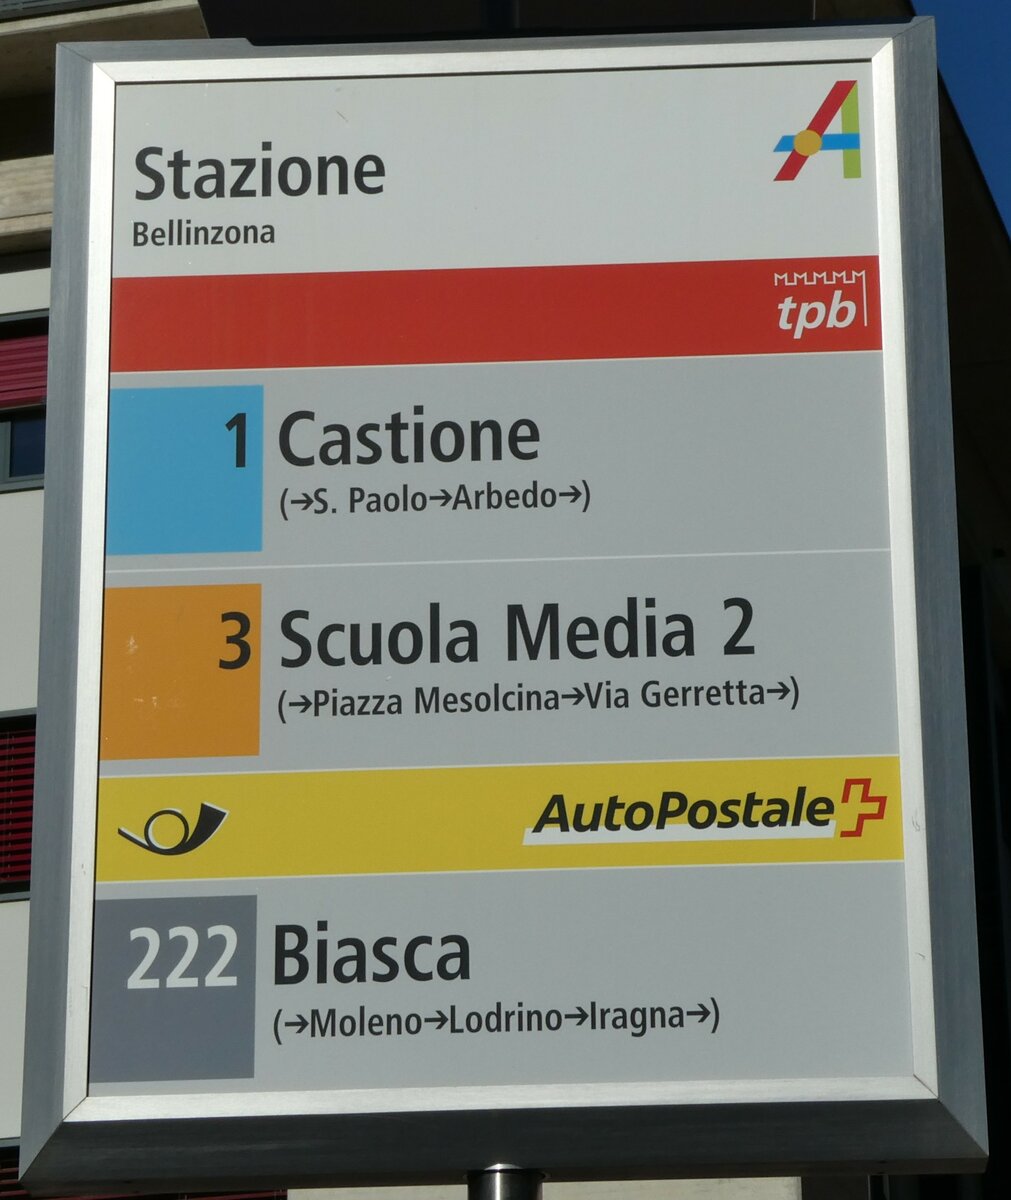 (229'128) - tpb/PostAuto-Haltestellenschild - Bellinzona, Stazione - am 14. Oktober 2021